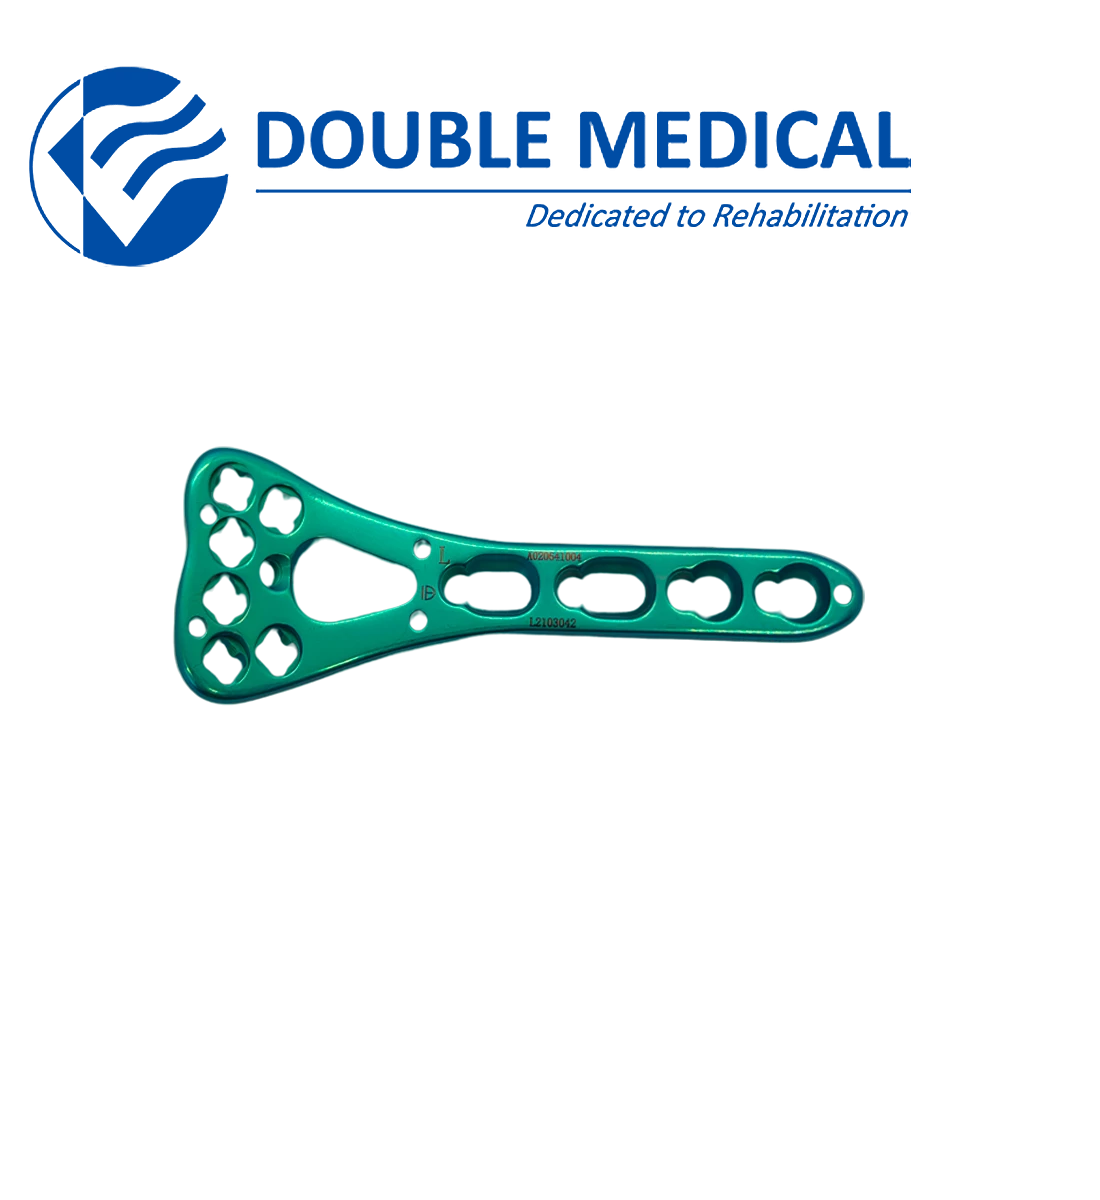 Пластина LCP (с угловой стабильностью), для дистального отдела лучевой кости, волярная, полиаксиальная, широкая, 3-4 отверстия, длина 55-66 мм, левая/правая, титан